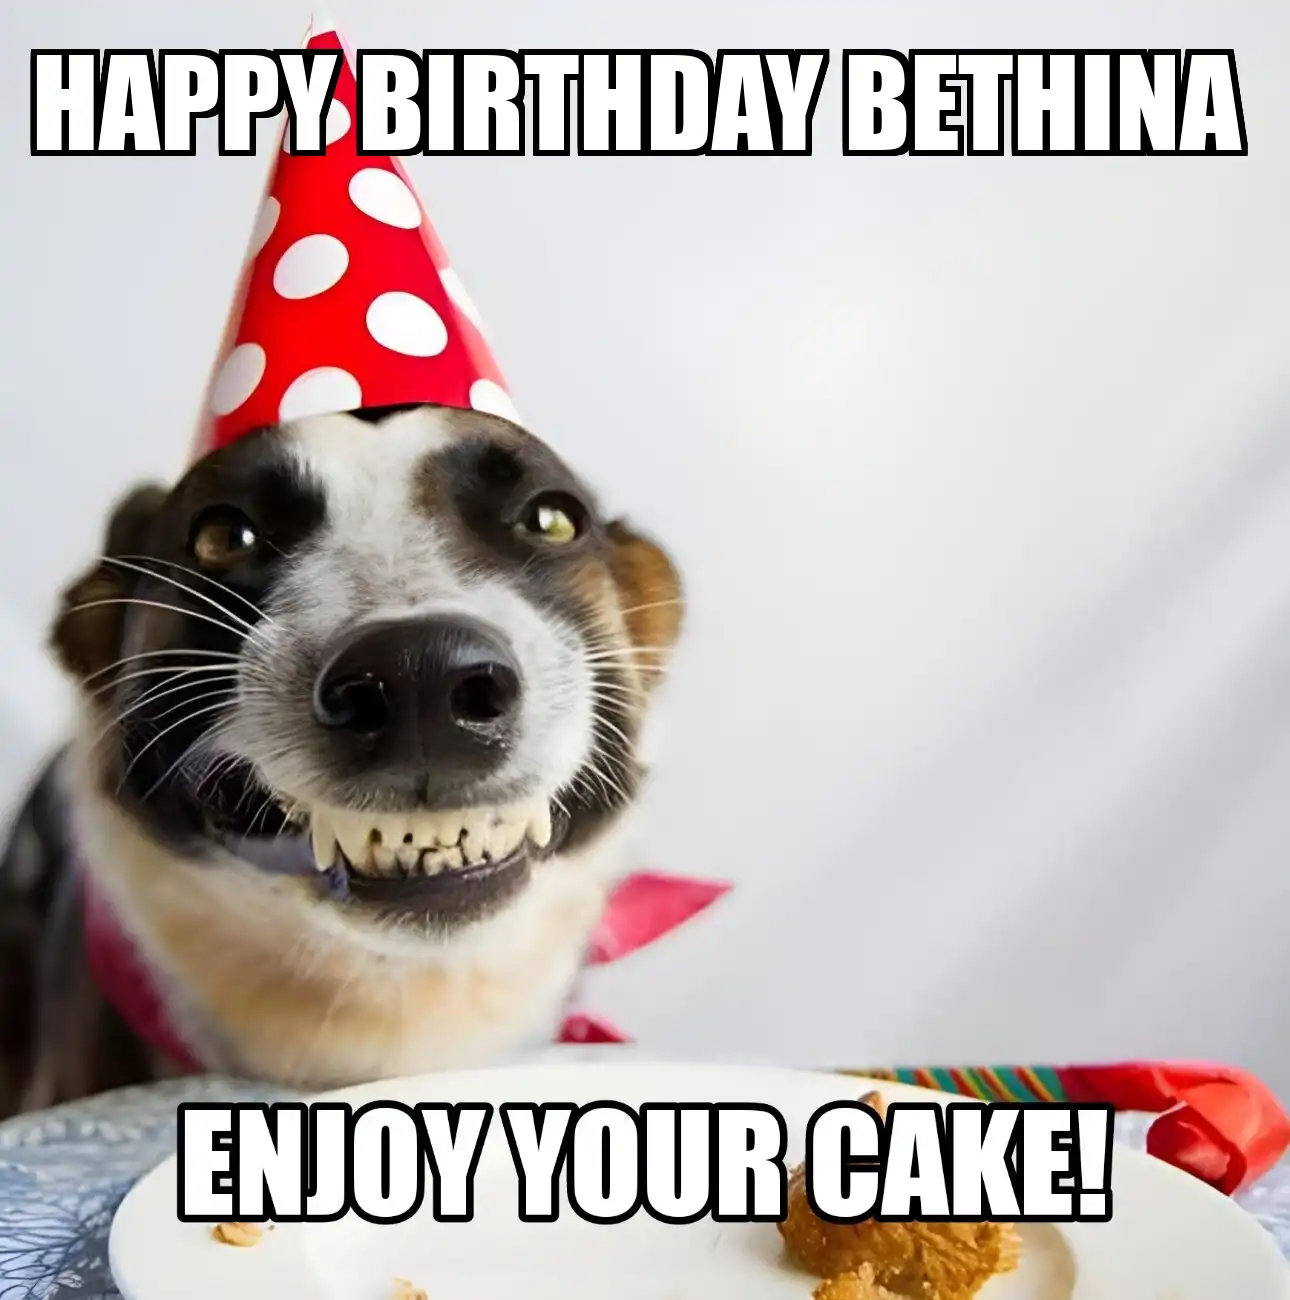 Happy Birthday Bethina Enjoy Your Cake Dog Meme